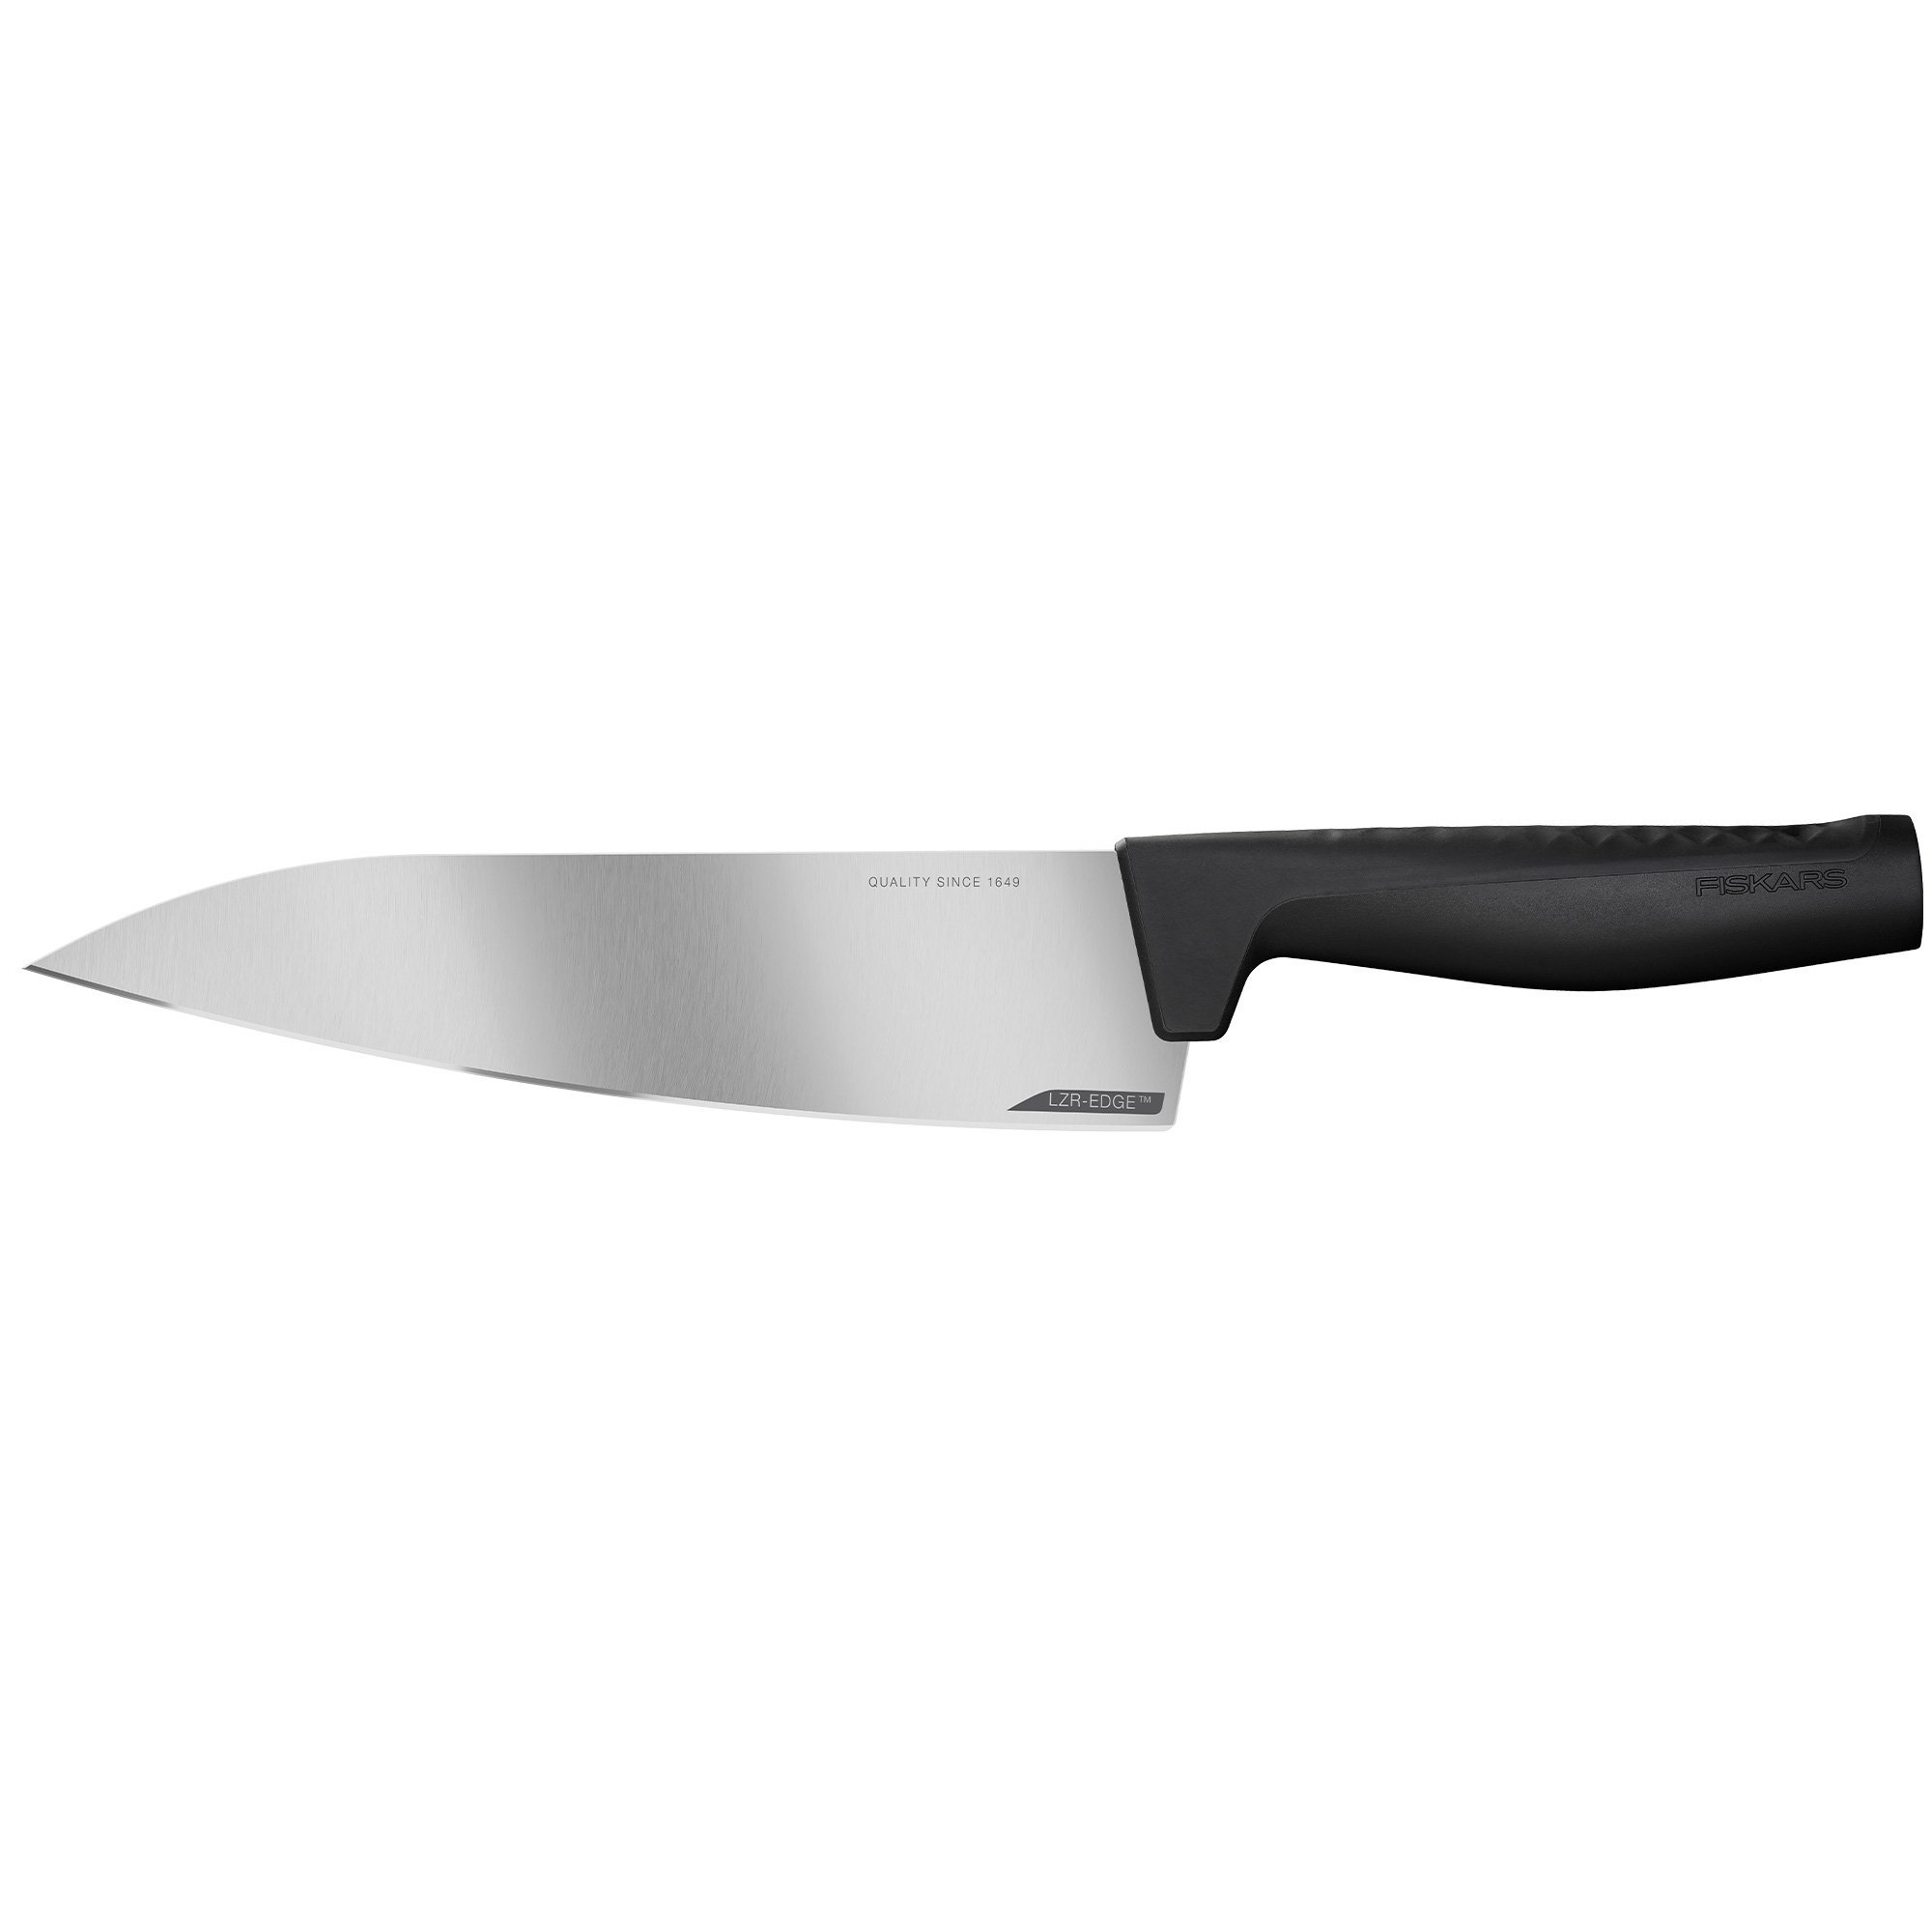 Fiskars Hard Edge kokkekniv, 20 cm